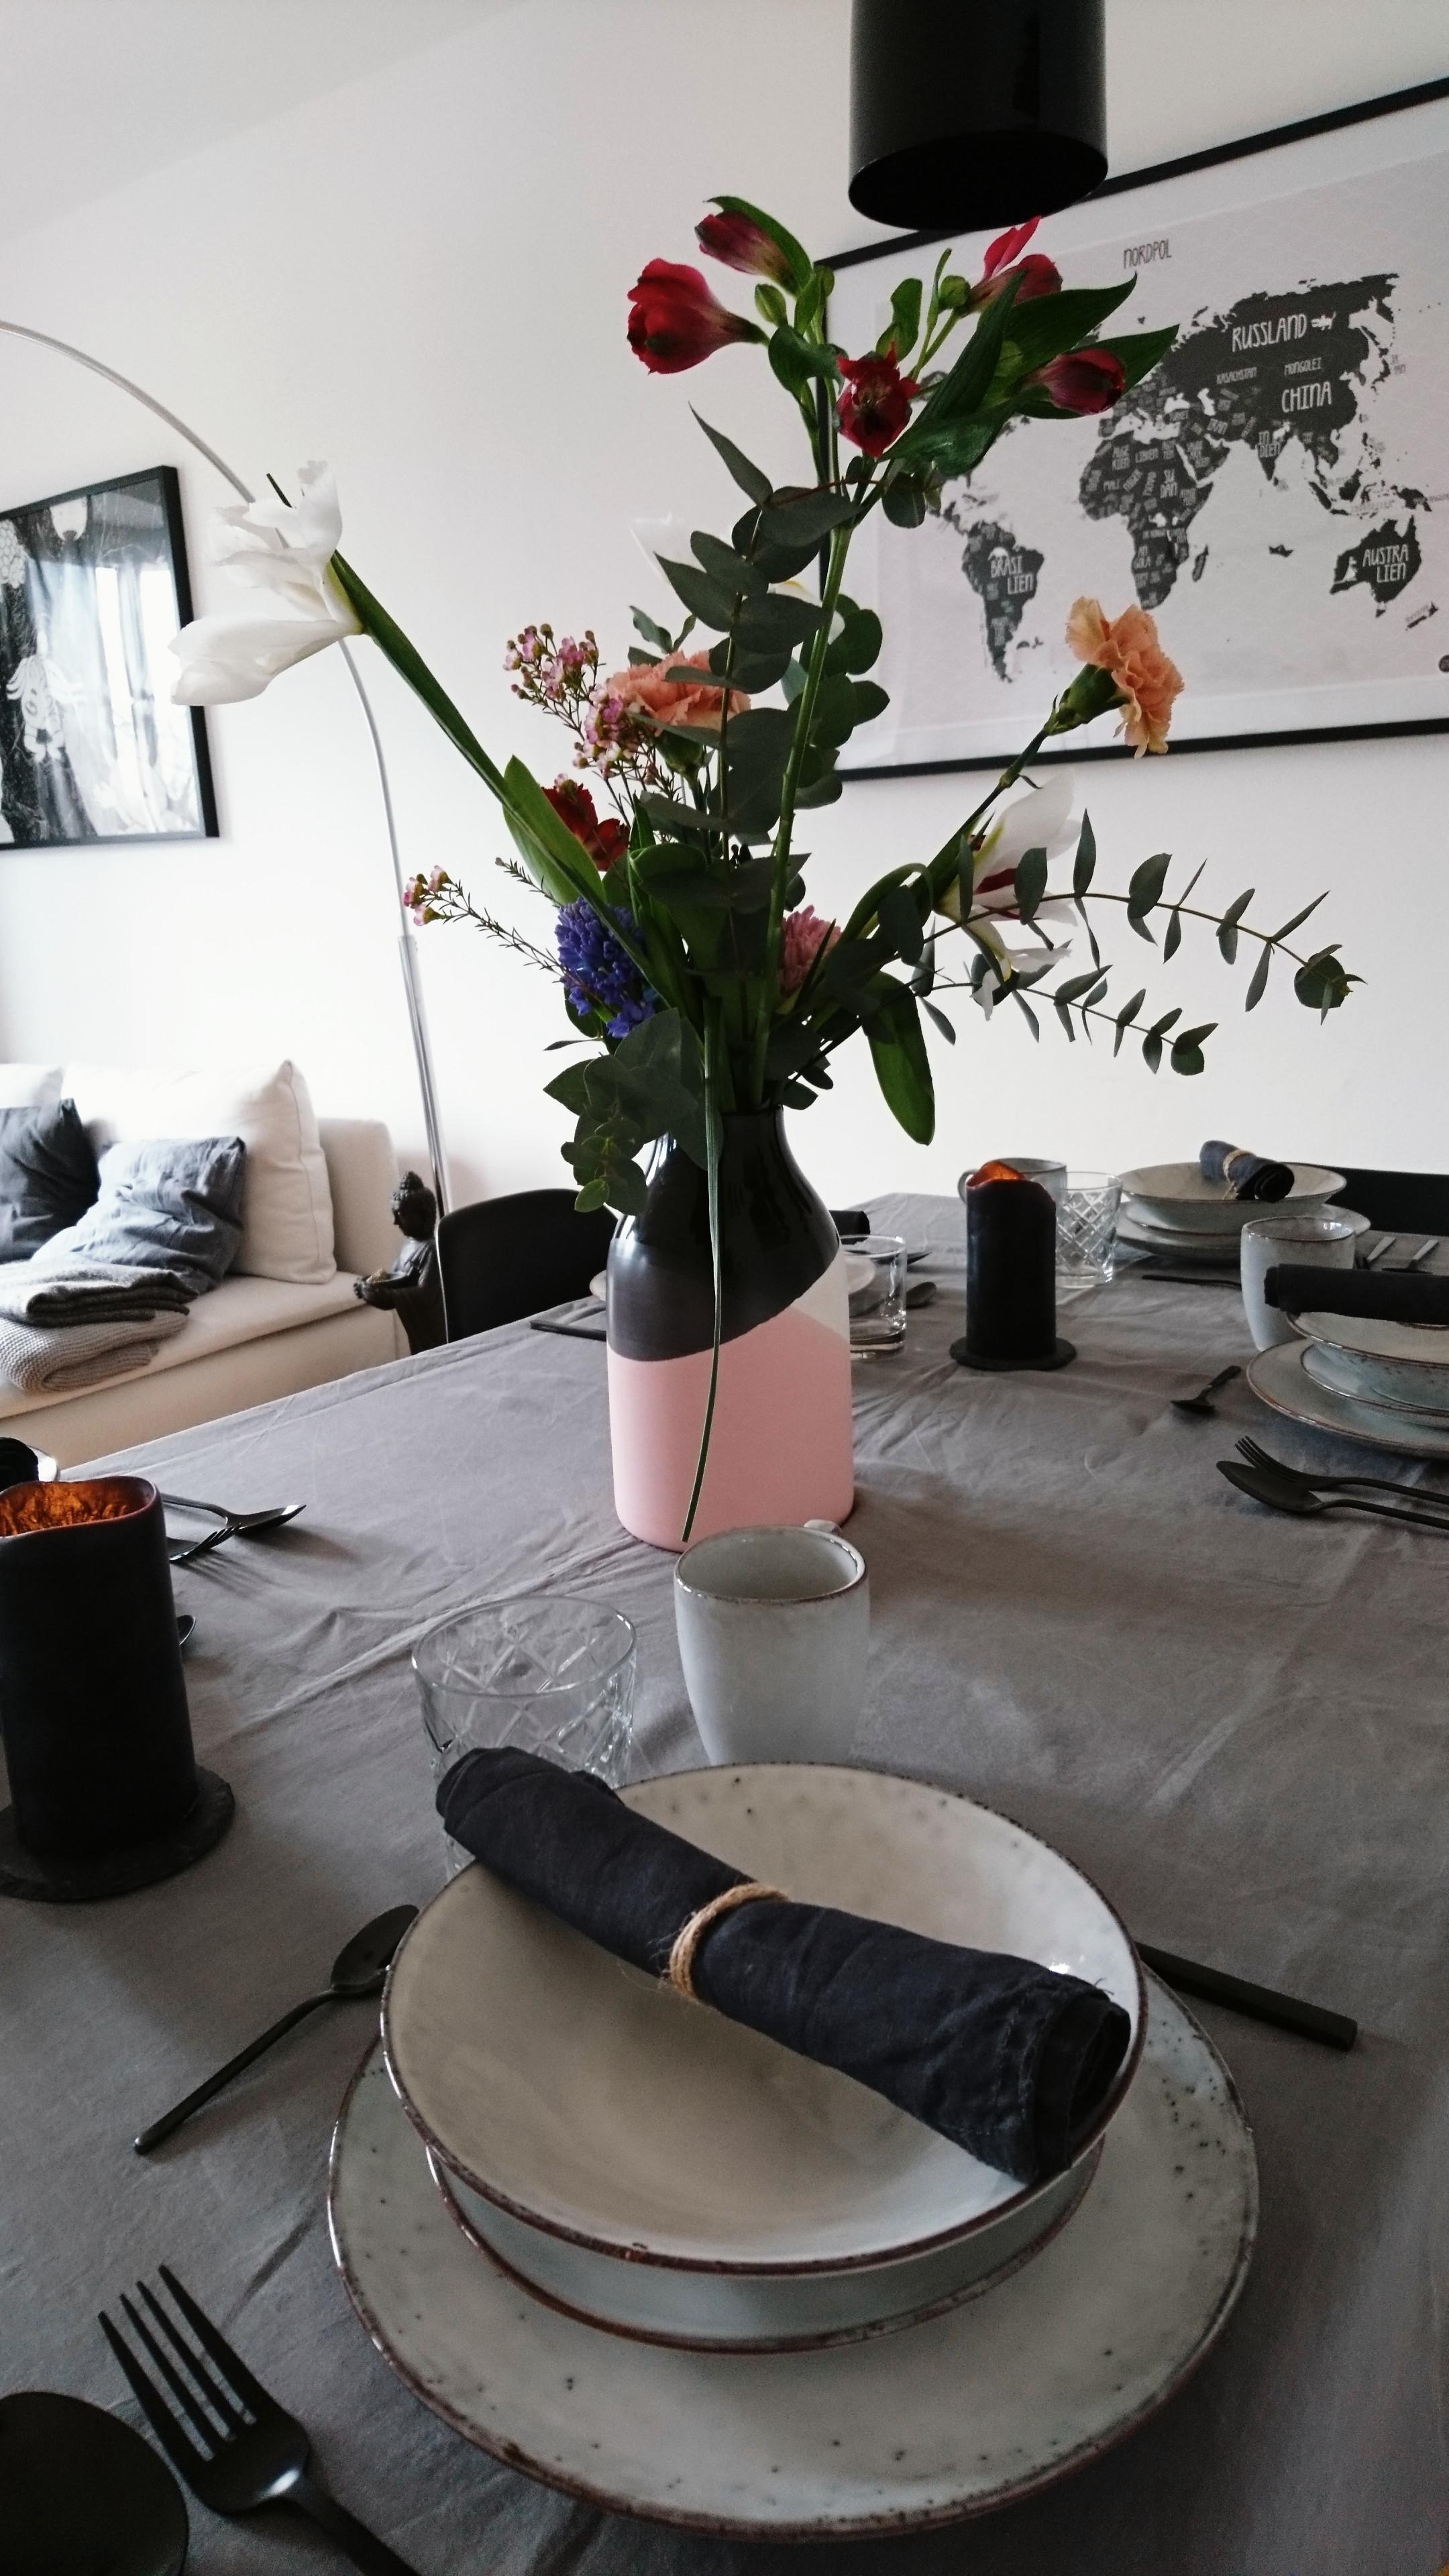 Die Gäste können kommen... 🥧☕🌸🌷
#flowers #Blumen #living #home #brostecopenhagen #freshflowers #tischdeko